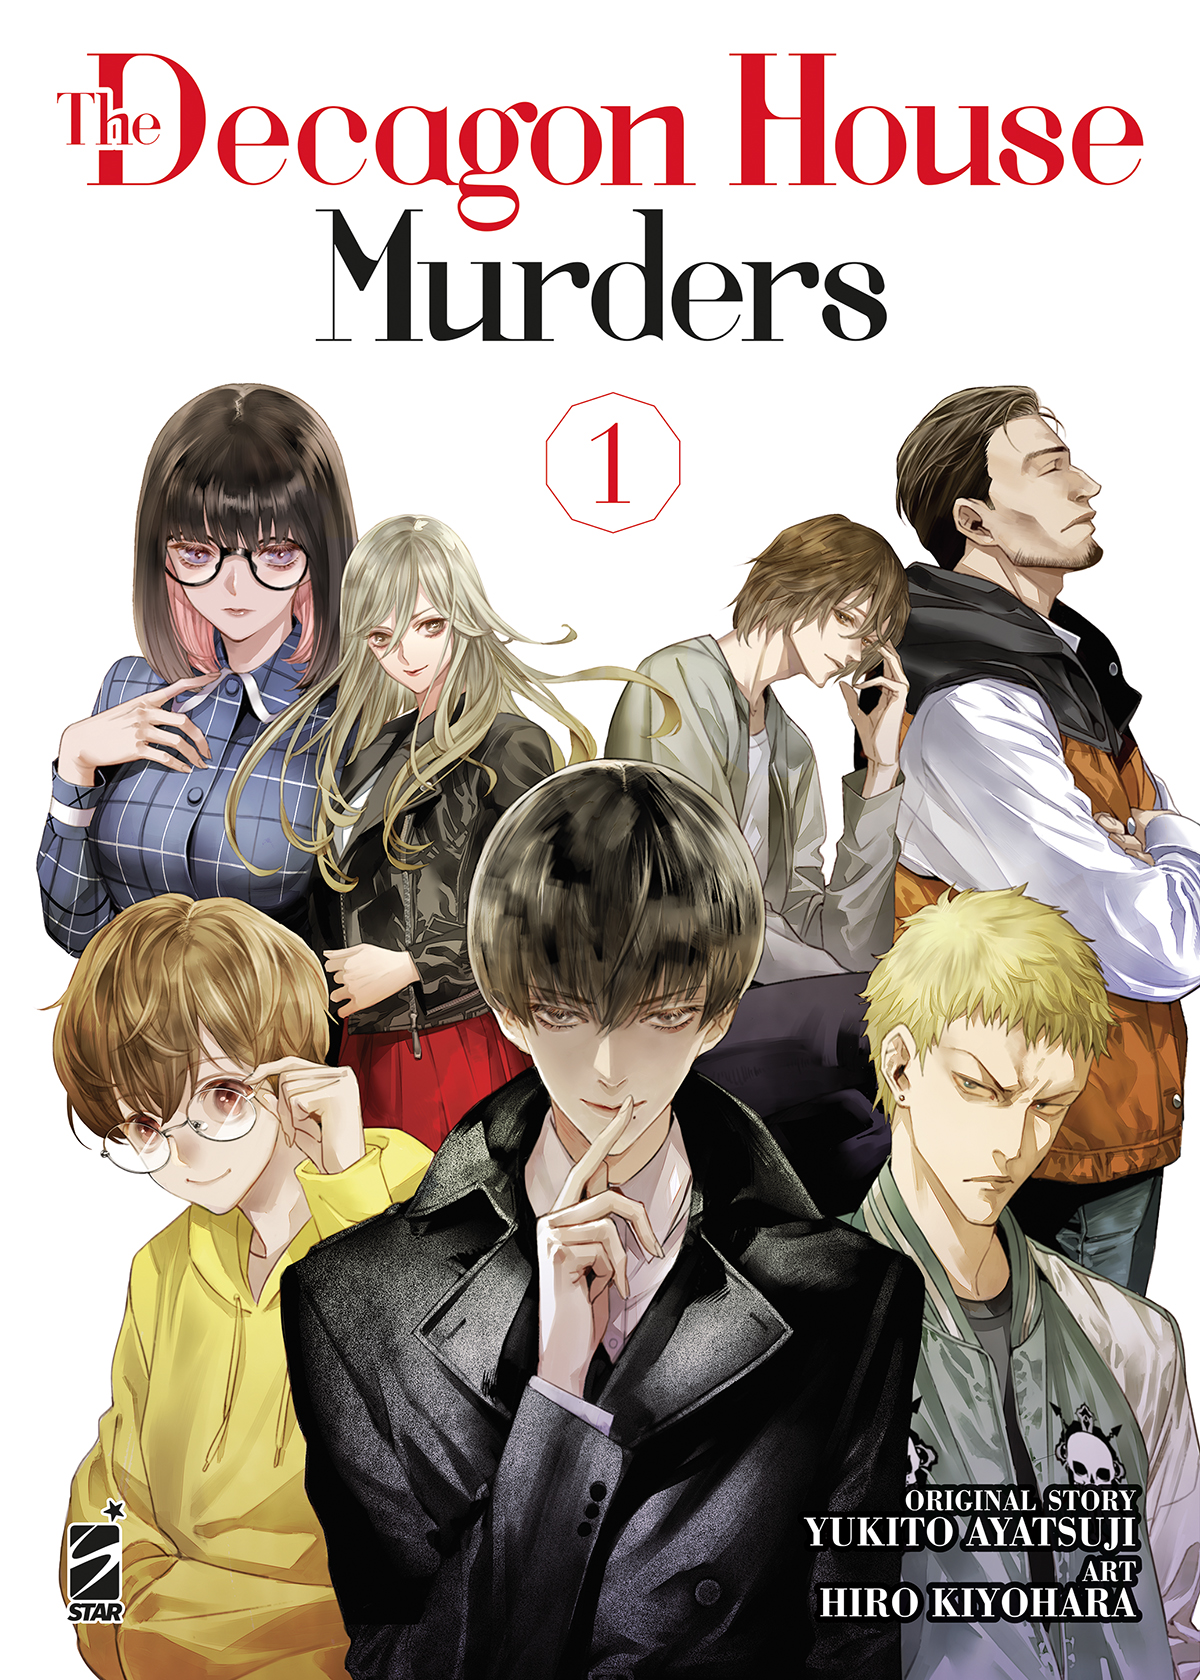 i personaggi di the decagon house murders sono al centro della copertina del manga - nerdface